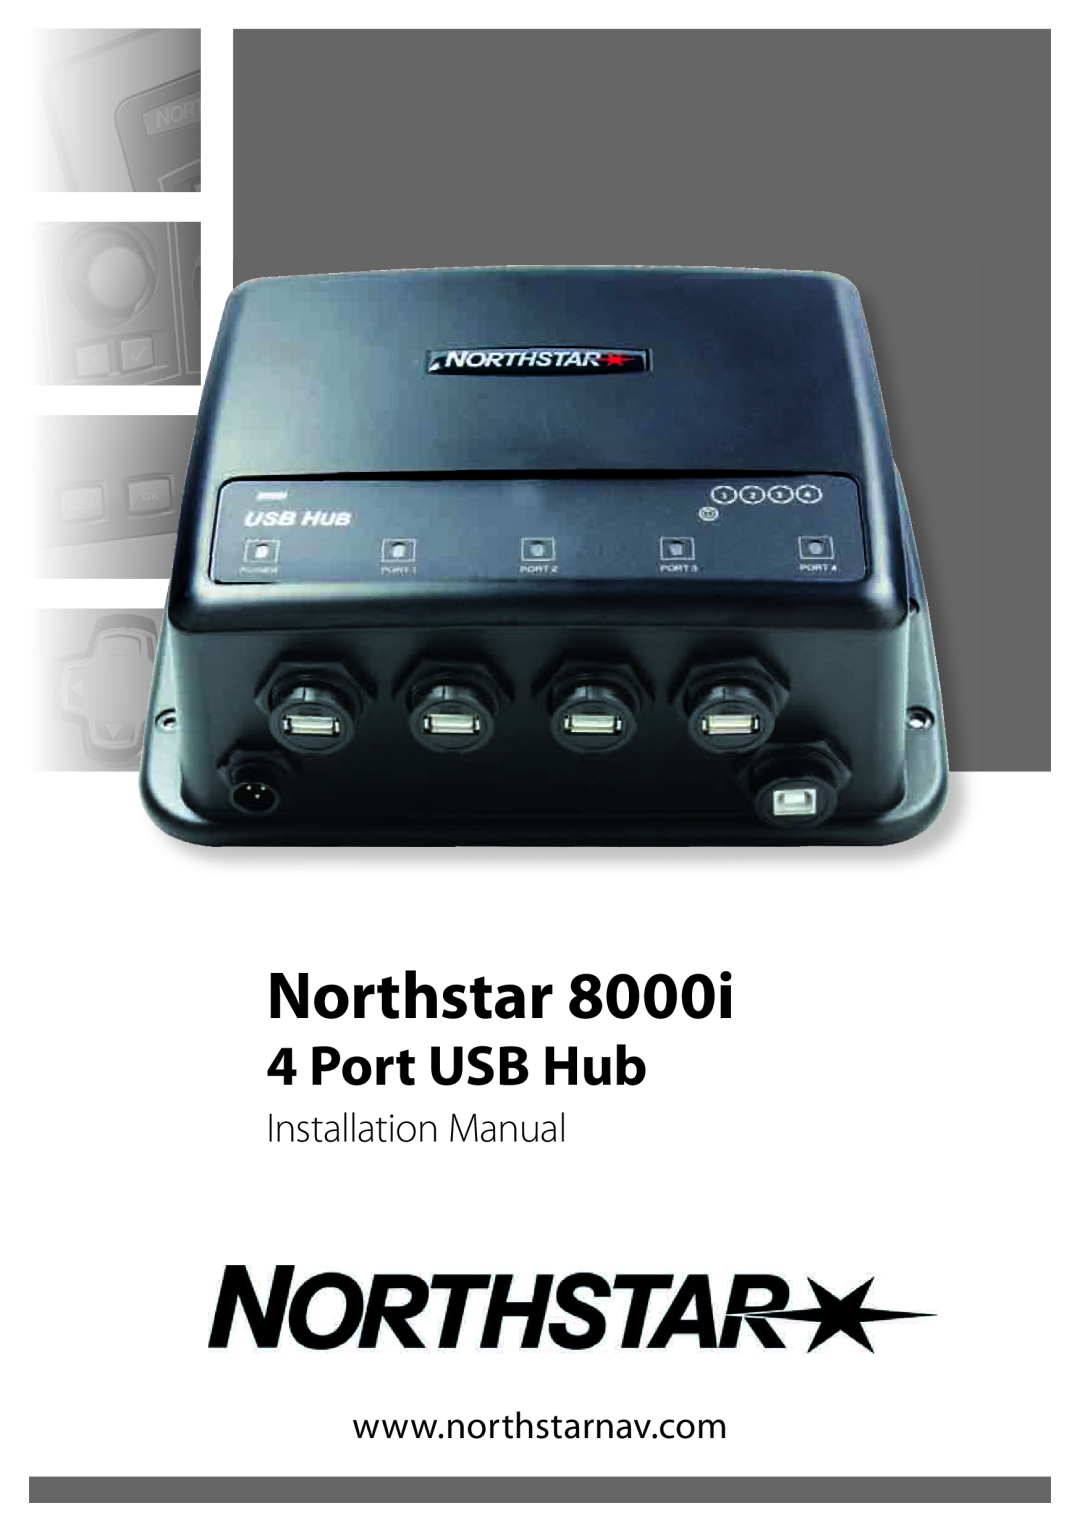 North Star 8000i installation manual Northstar, Port USB Hub, Installation Manual 